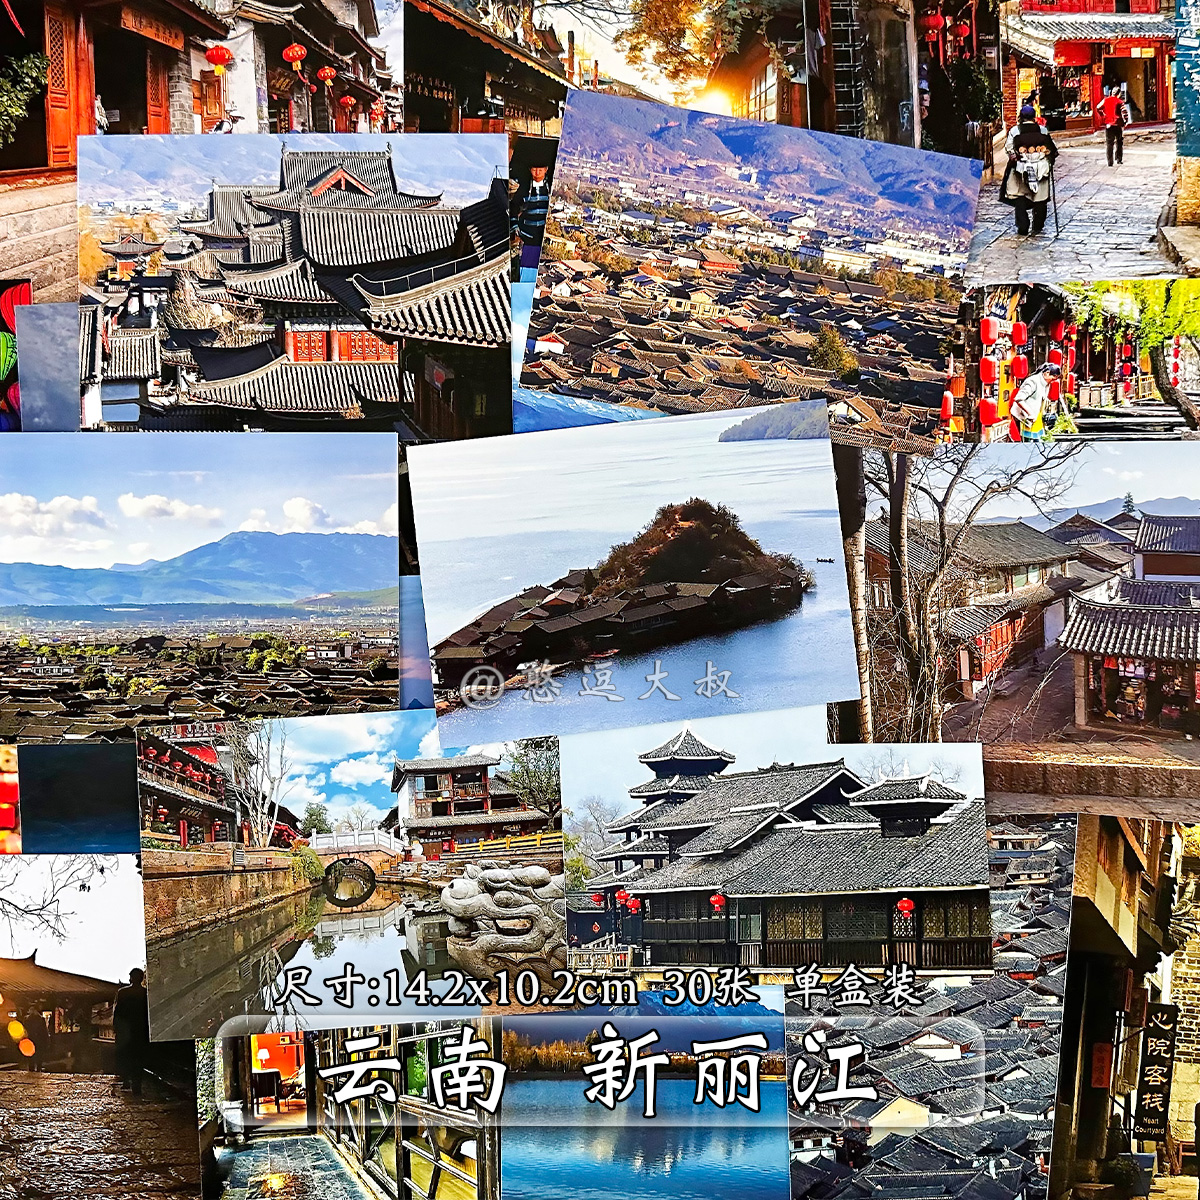 云南大理丽江旅行攻略风景明信片 古城纪念品洱海著名景点贺卡片